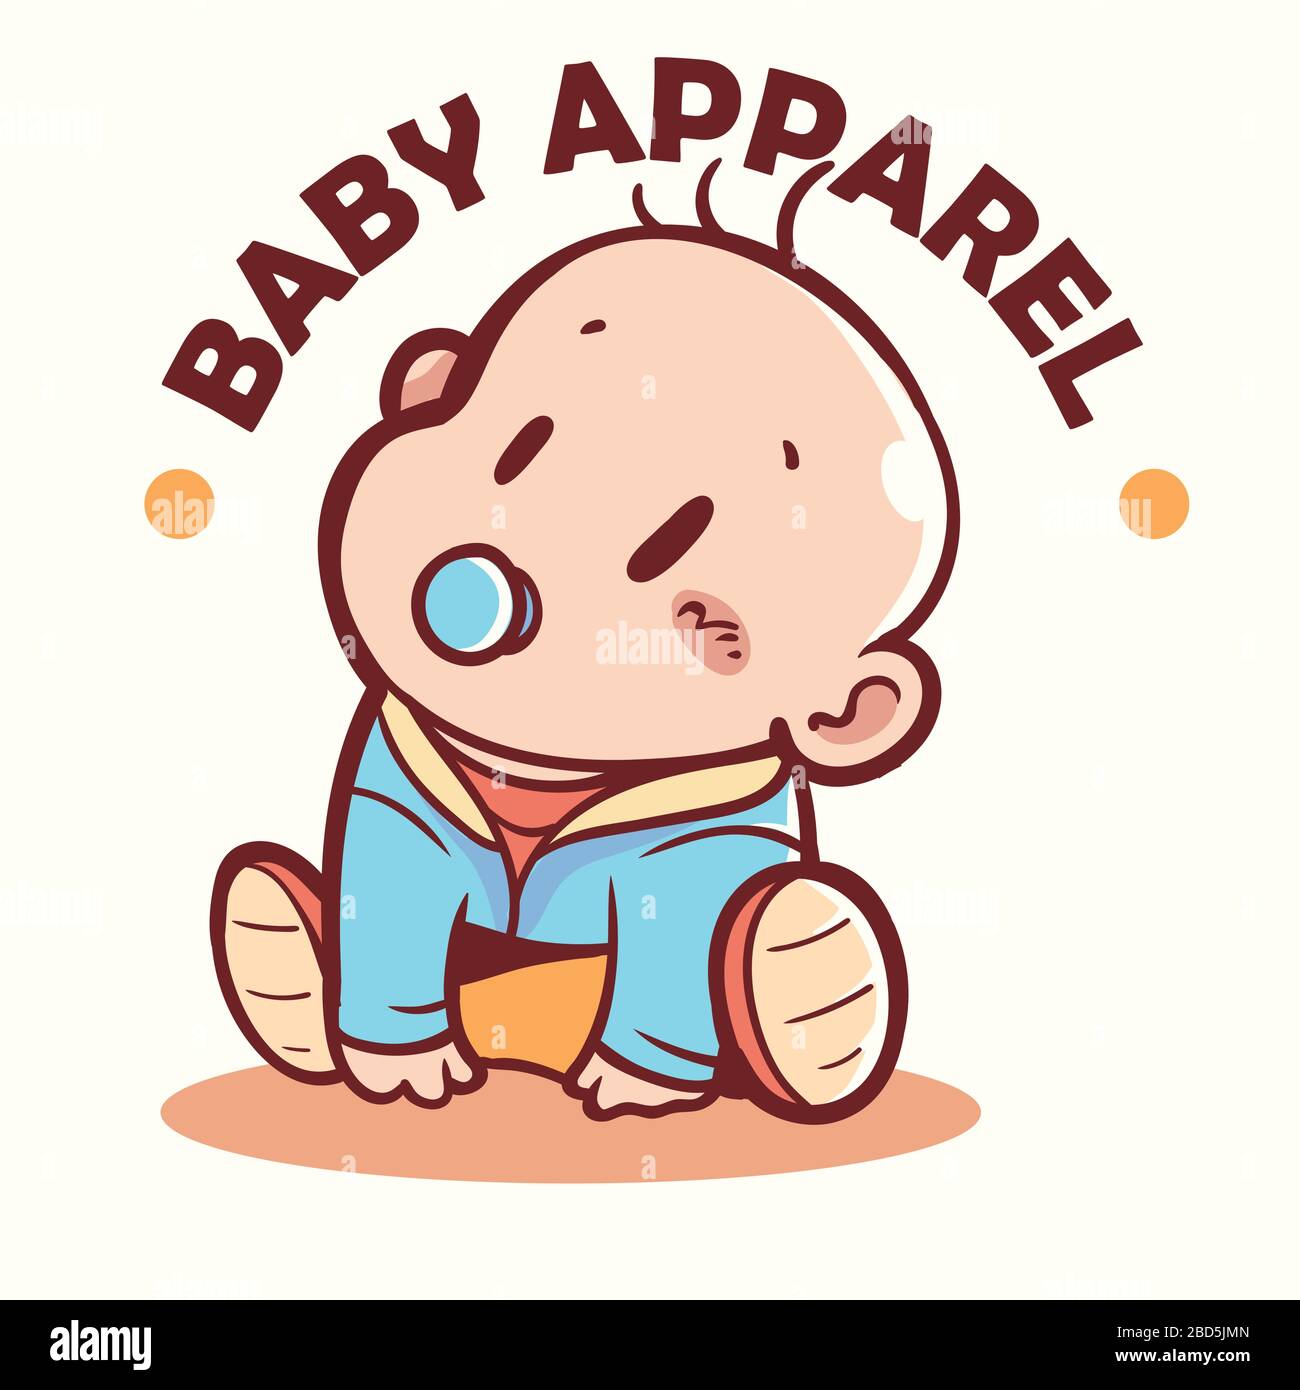 Baby Apparel Mascot / logo Stock Vector